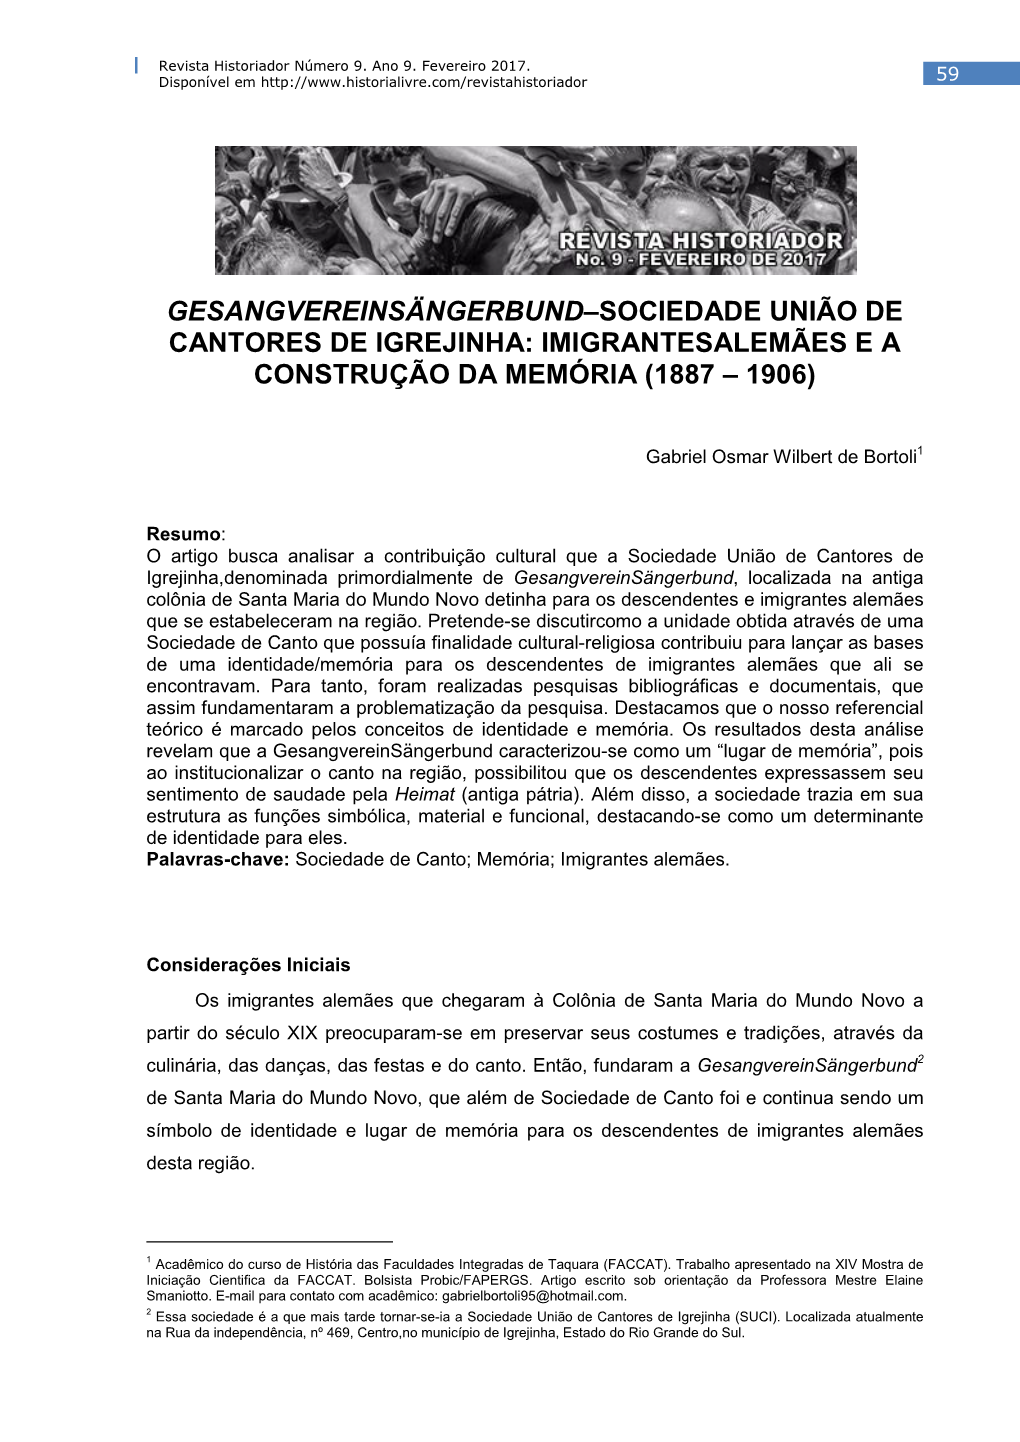 Gesangvereinsängerbund–Sociedade União De Cantores De Igrejinha: Imigrantesalemães E a Construção Da Memória (1887 – 1906)